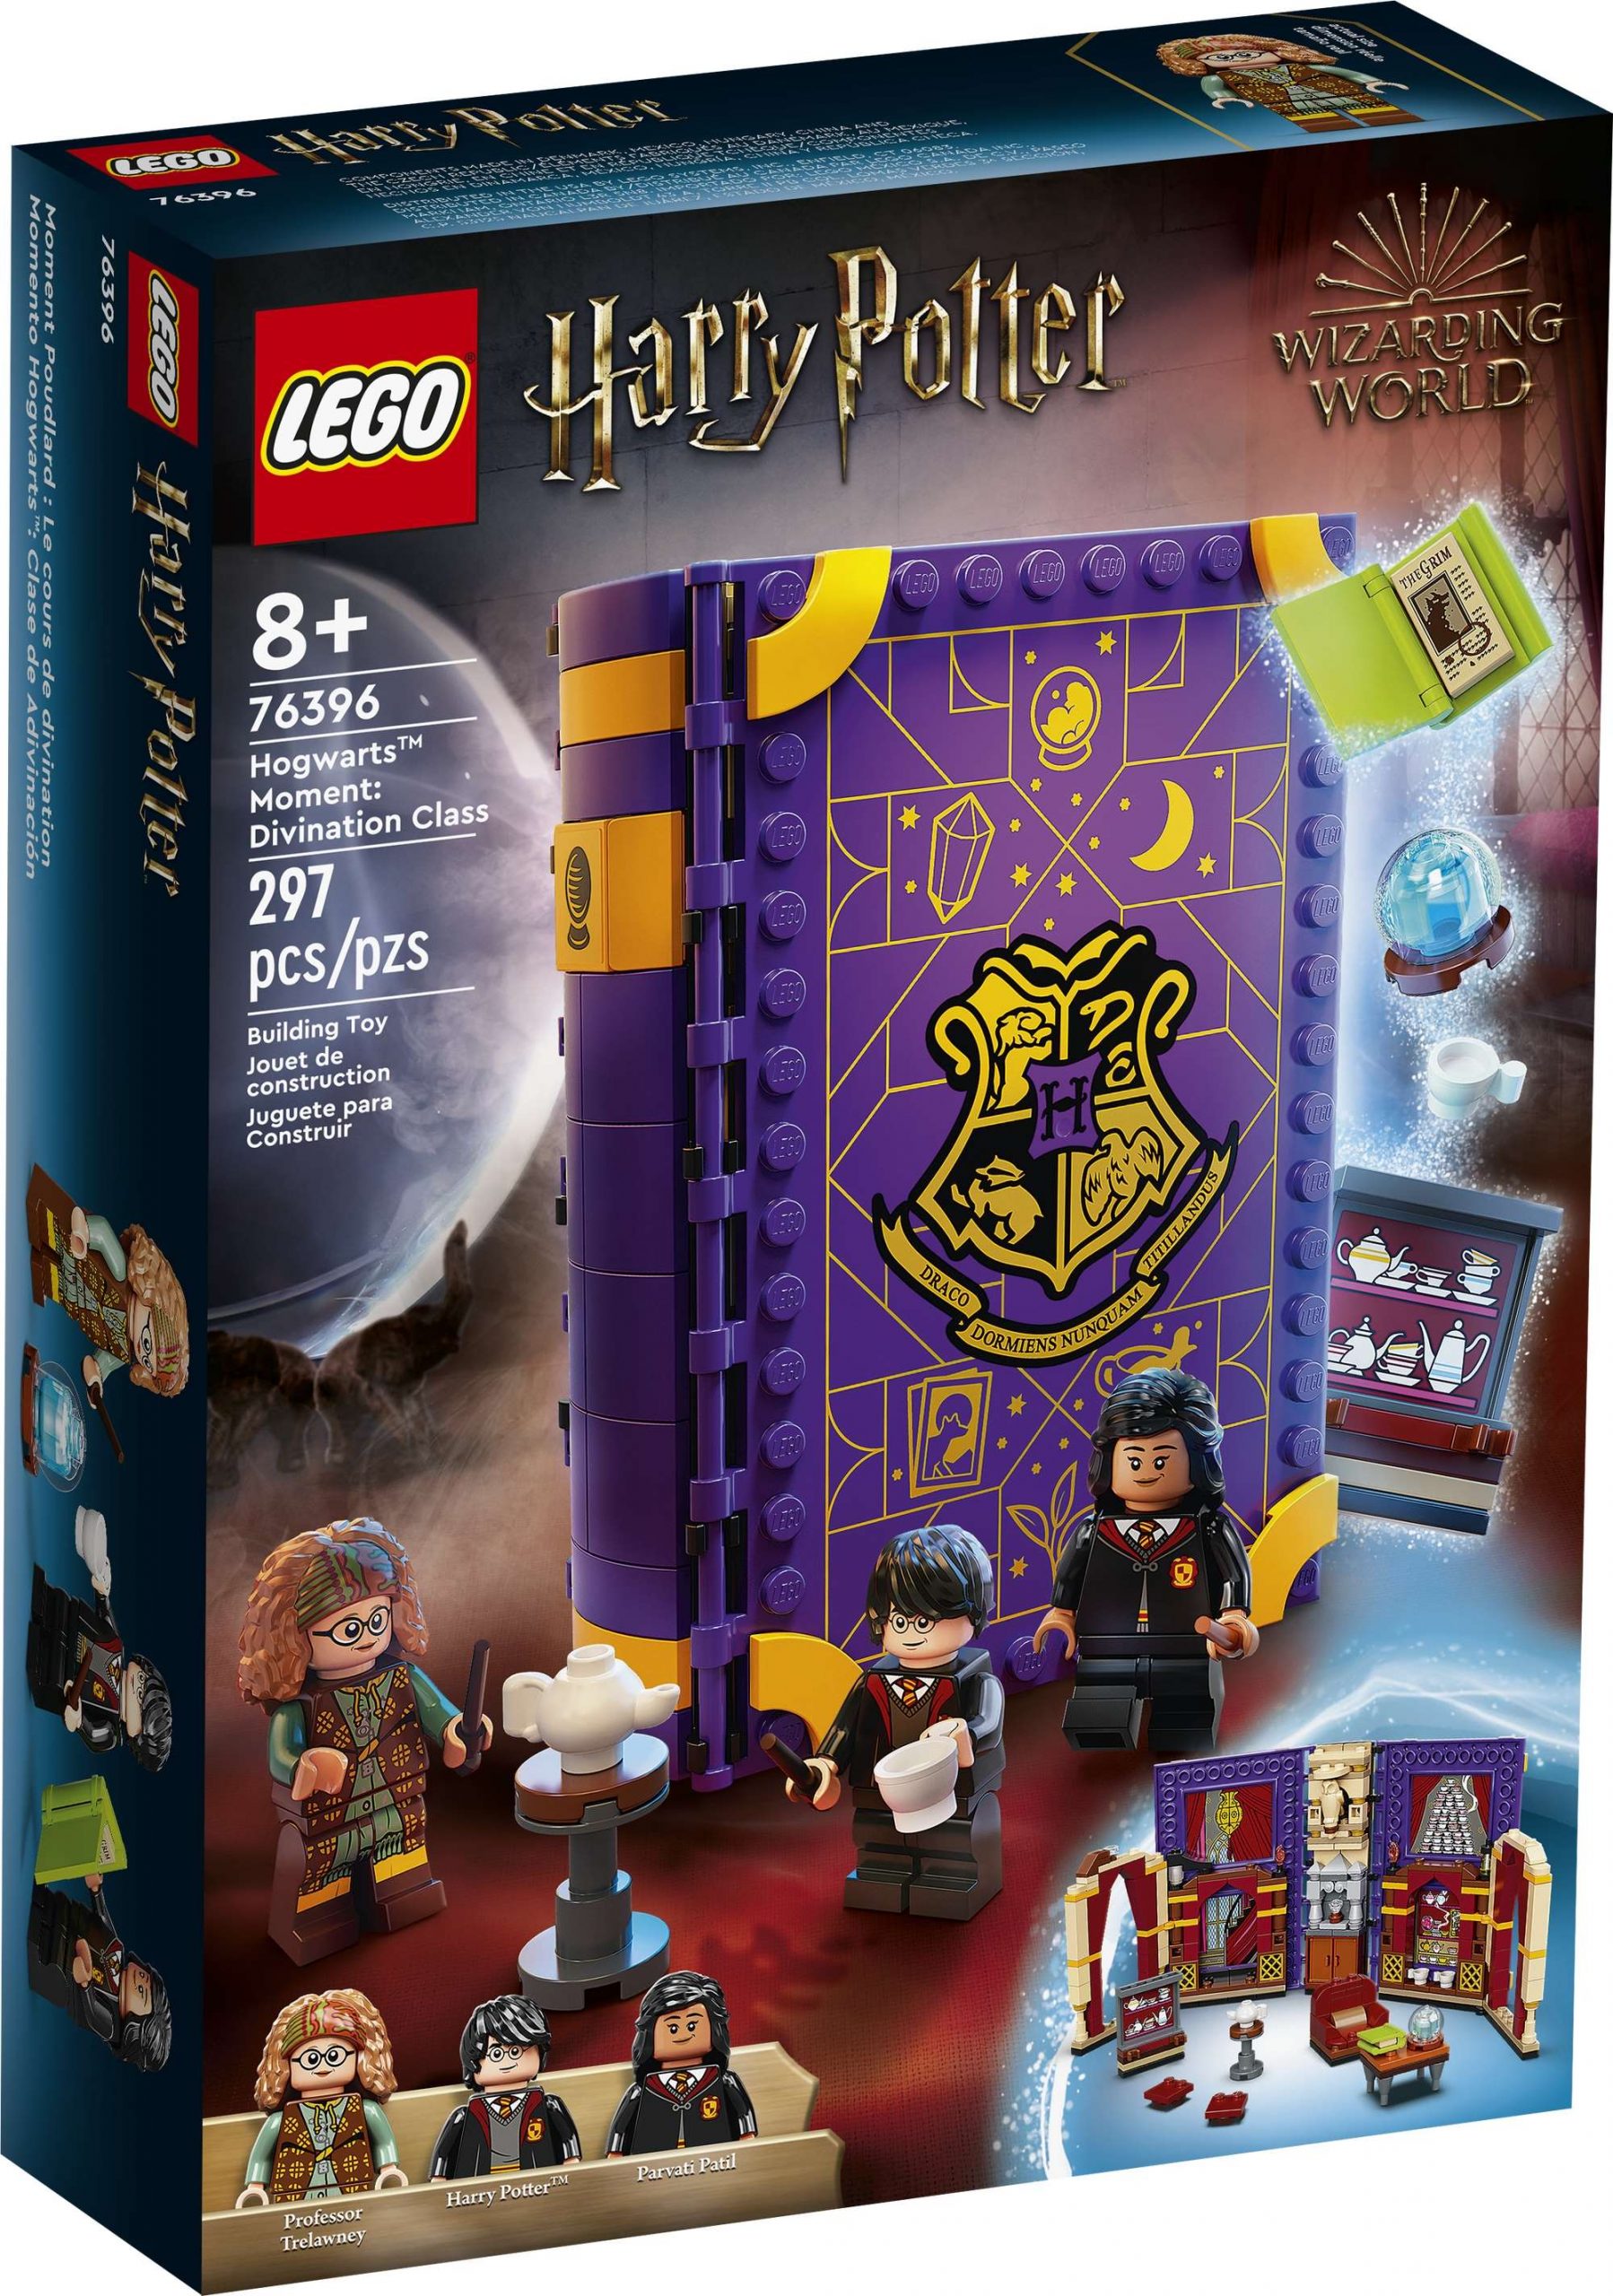 bloed Monnik inspanning Vier nieuwe LEGO Harry Potter-sets vanaf 1 maart 2022 te koop · BrickTastic